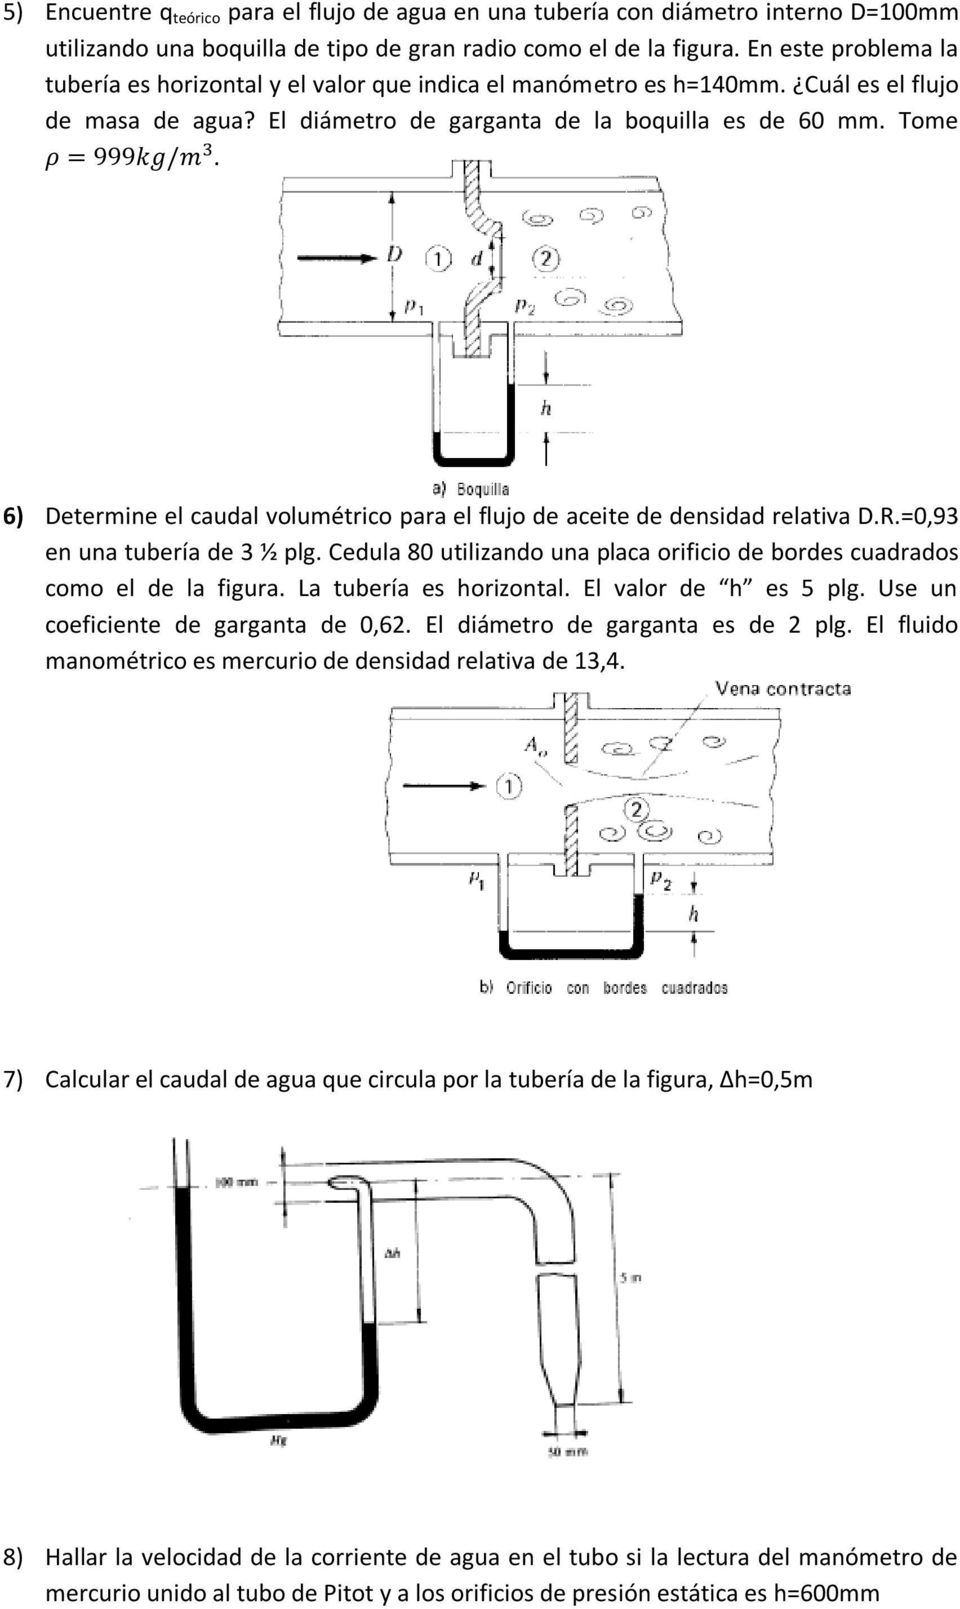 6) Determine el caudal volumétrico para el flujo de aceite de densidad relativa D.R.=0,93 en una tubería de 3 ½ plg. Cedula 80 utilizando una placa orificio de bordes cuadrados como el de la figura.